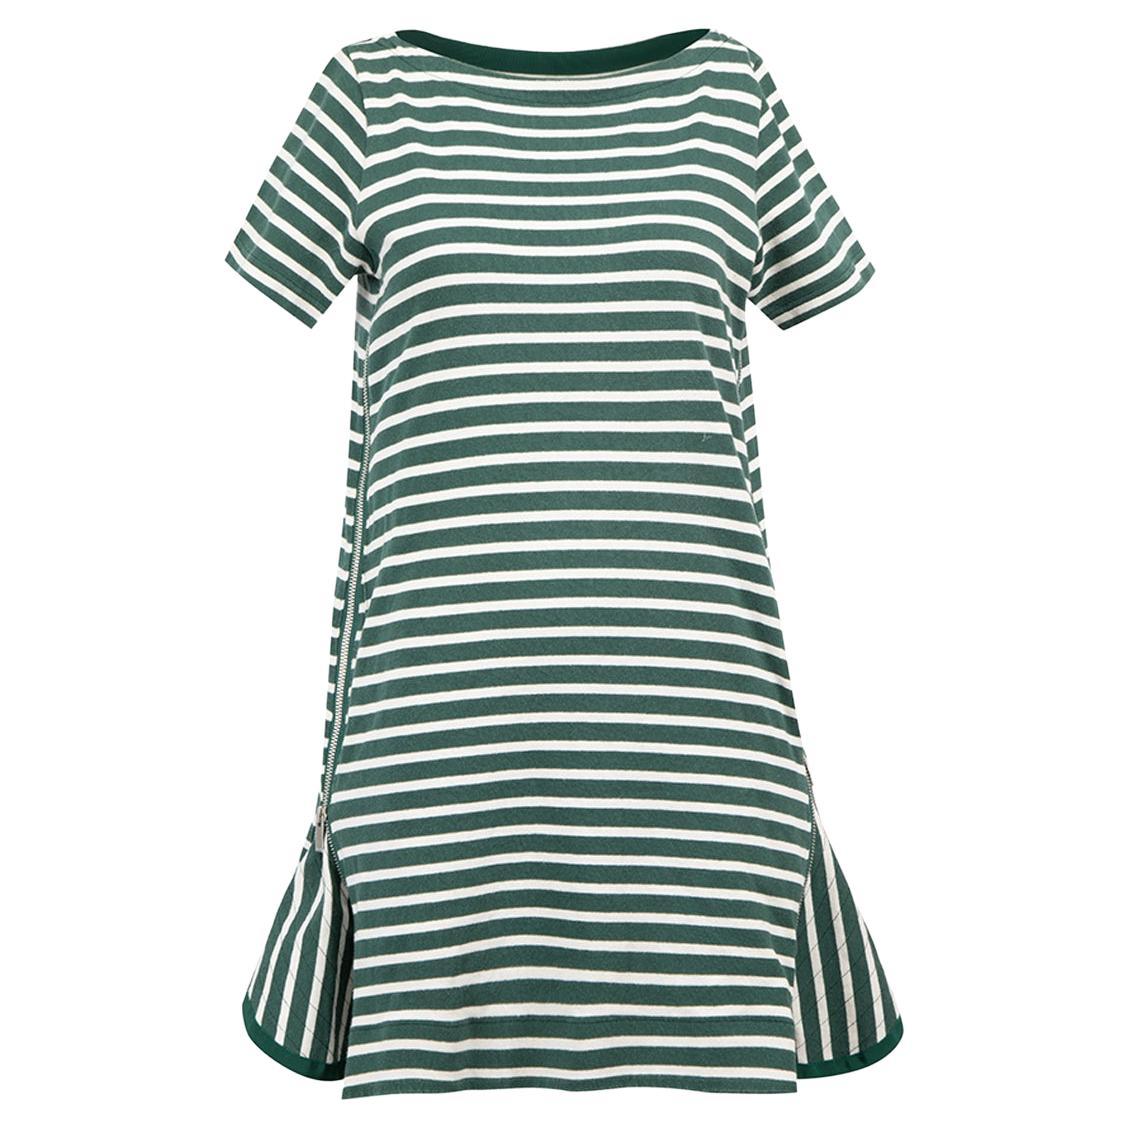 Grün-weiß gestreiftes Baumwollkleid mit Reißverschluss Größe S im Angebot